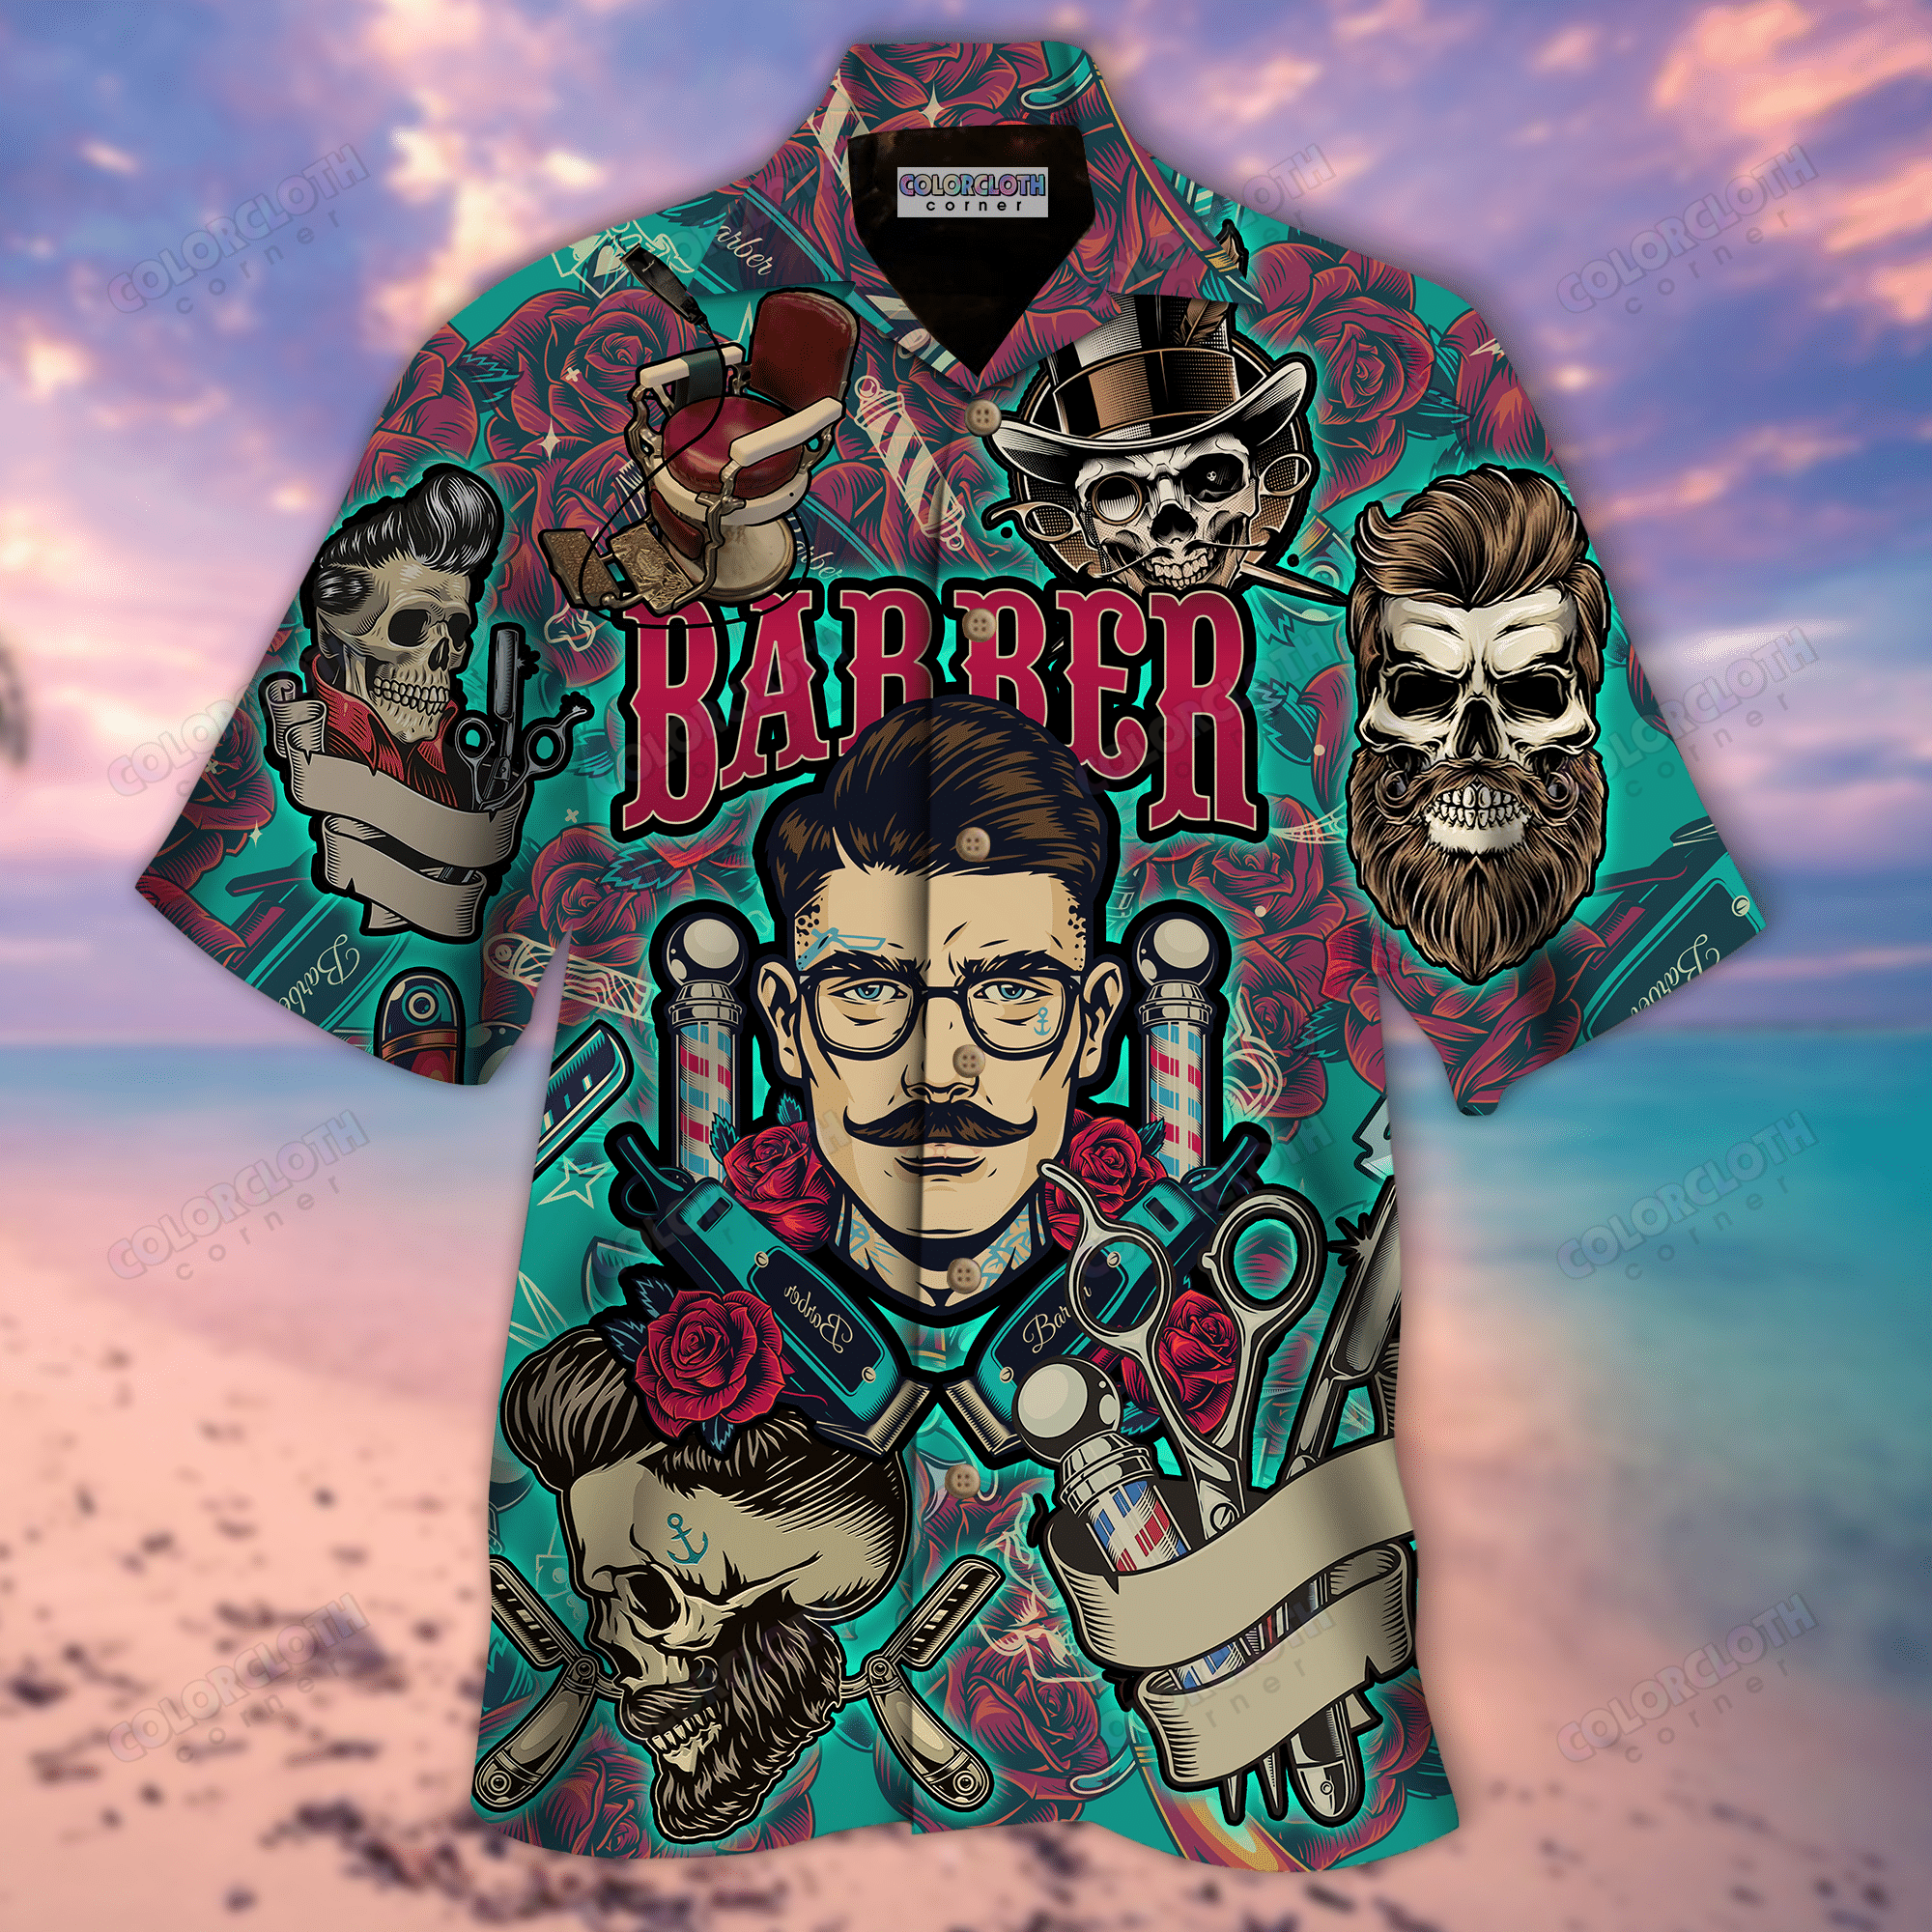 Barber   Stay Sharp Hawaiian Shirt Tv015529 StirtShirt